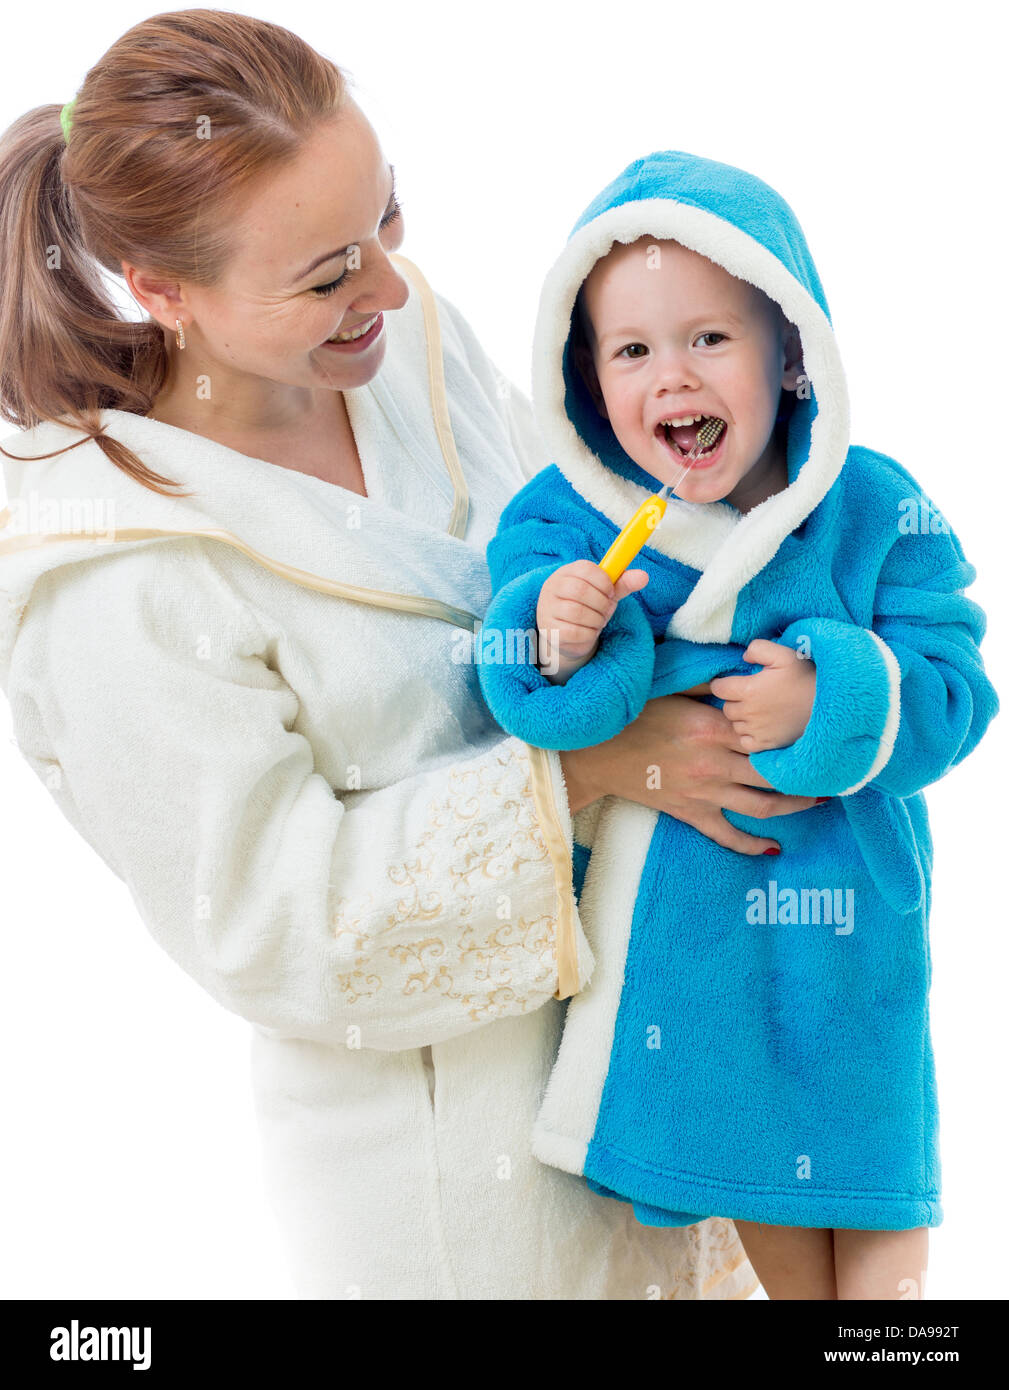 Glückliche Mutter und Kind Zähne putzen zusammen im Bad Stockfoto